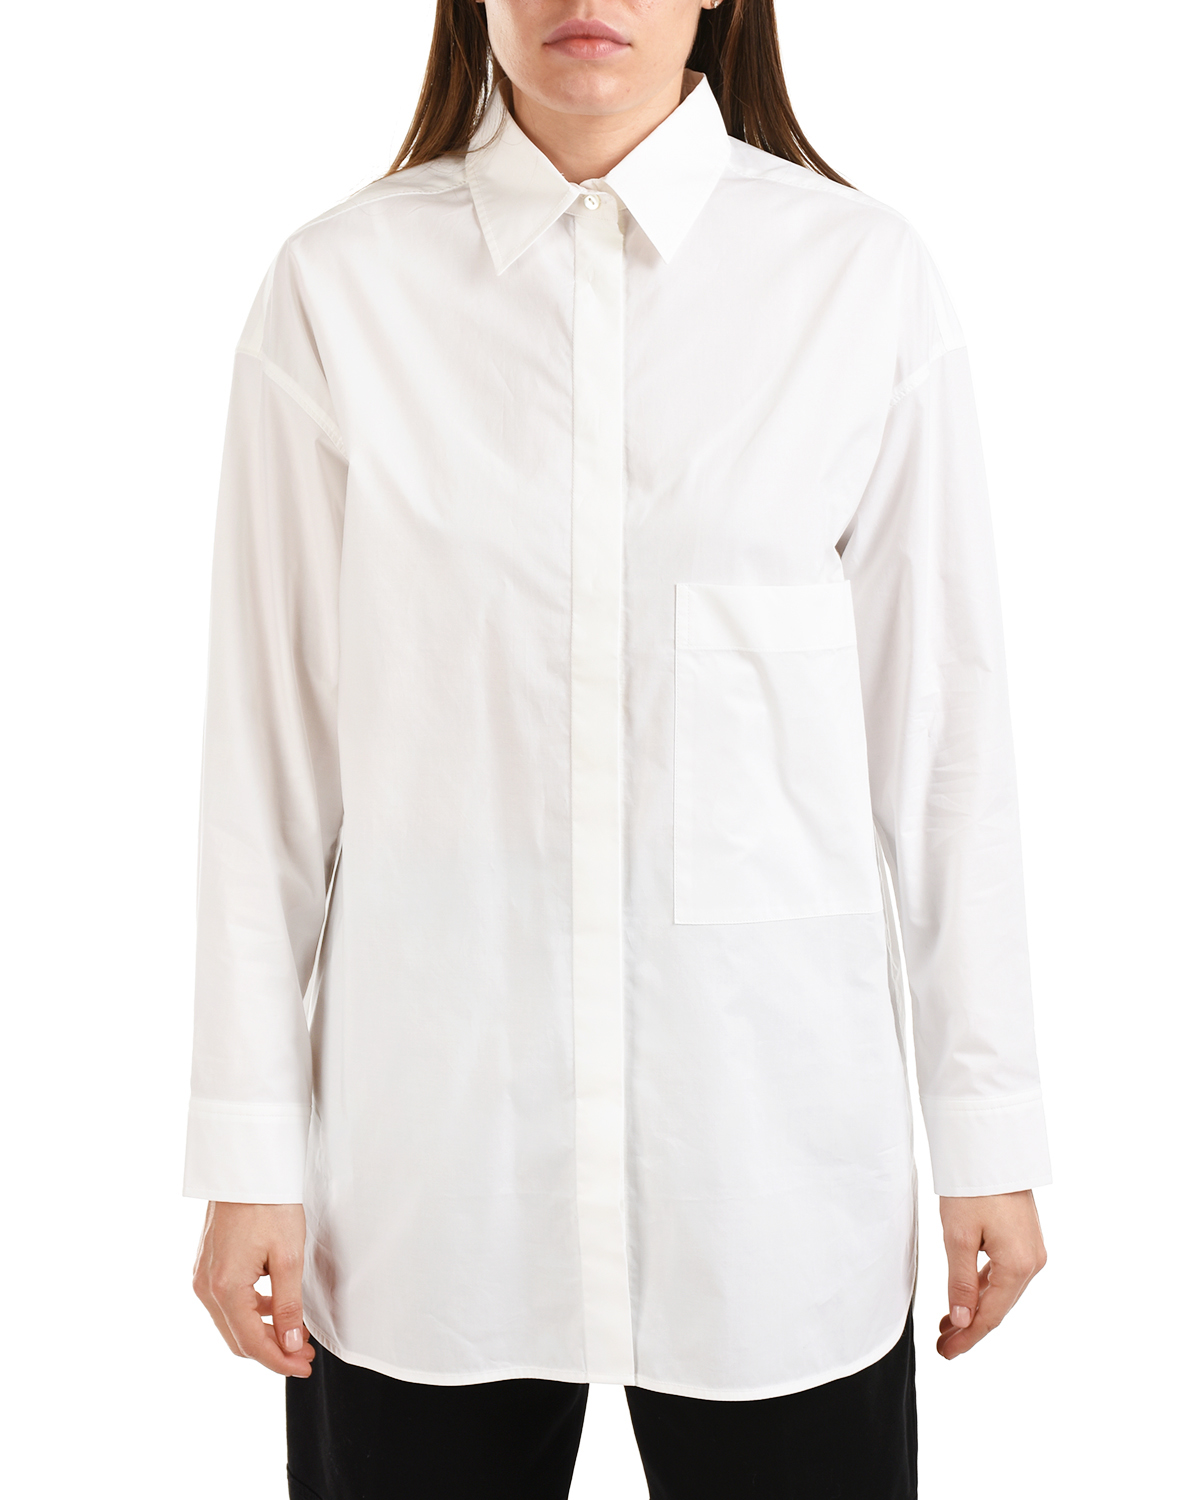 Удлиненная белая рубашка Parosh, размер 38, цвет белый - фото 7